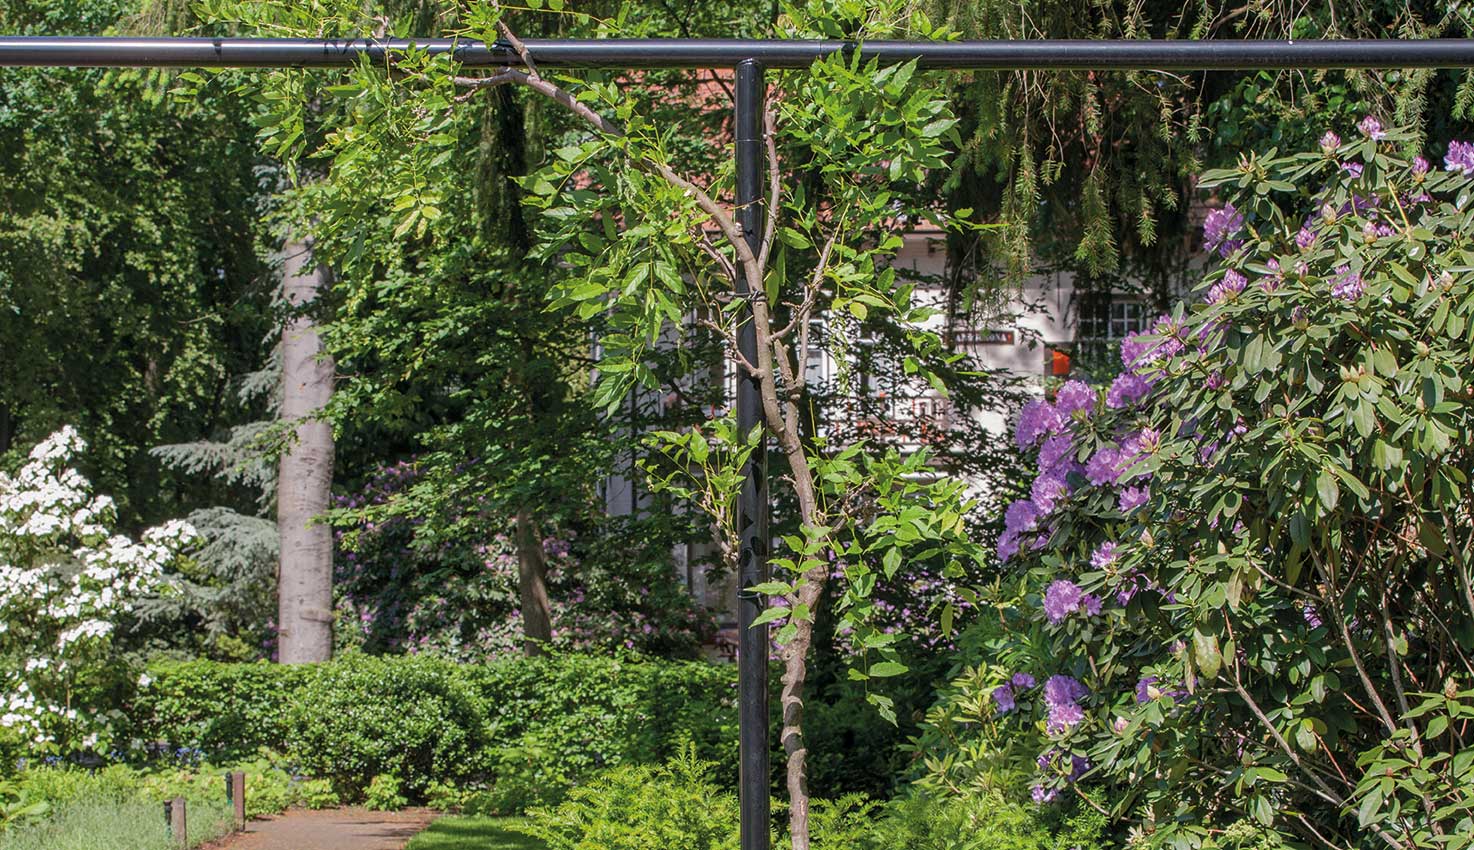 Klassieke tuin in Nunspeet met chique beplanting en blikvangers als een fontein, sierlijke lampen en antieke ornamenten rondom monumentale villa.